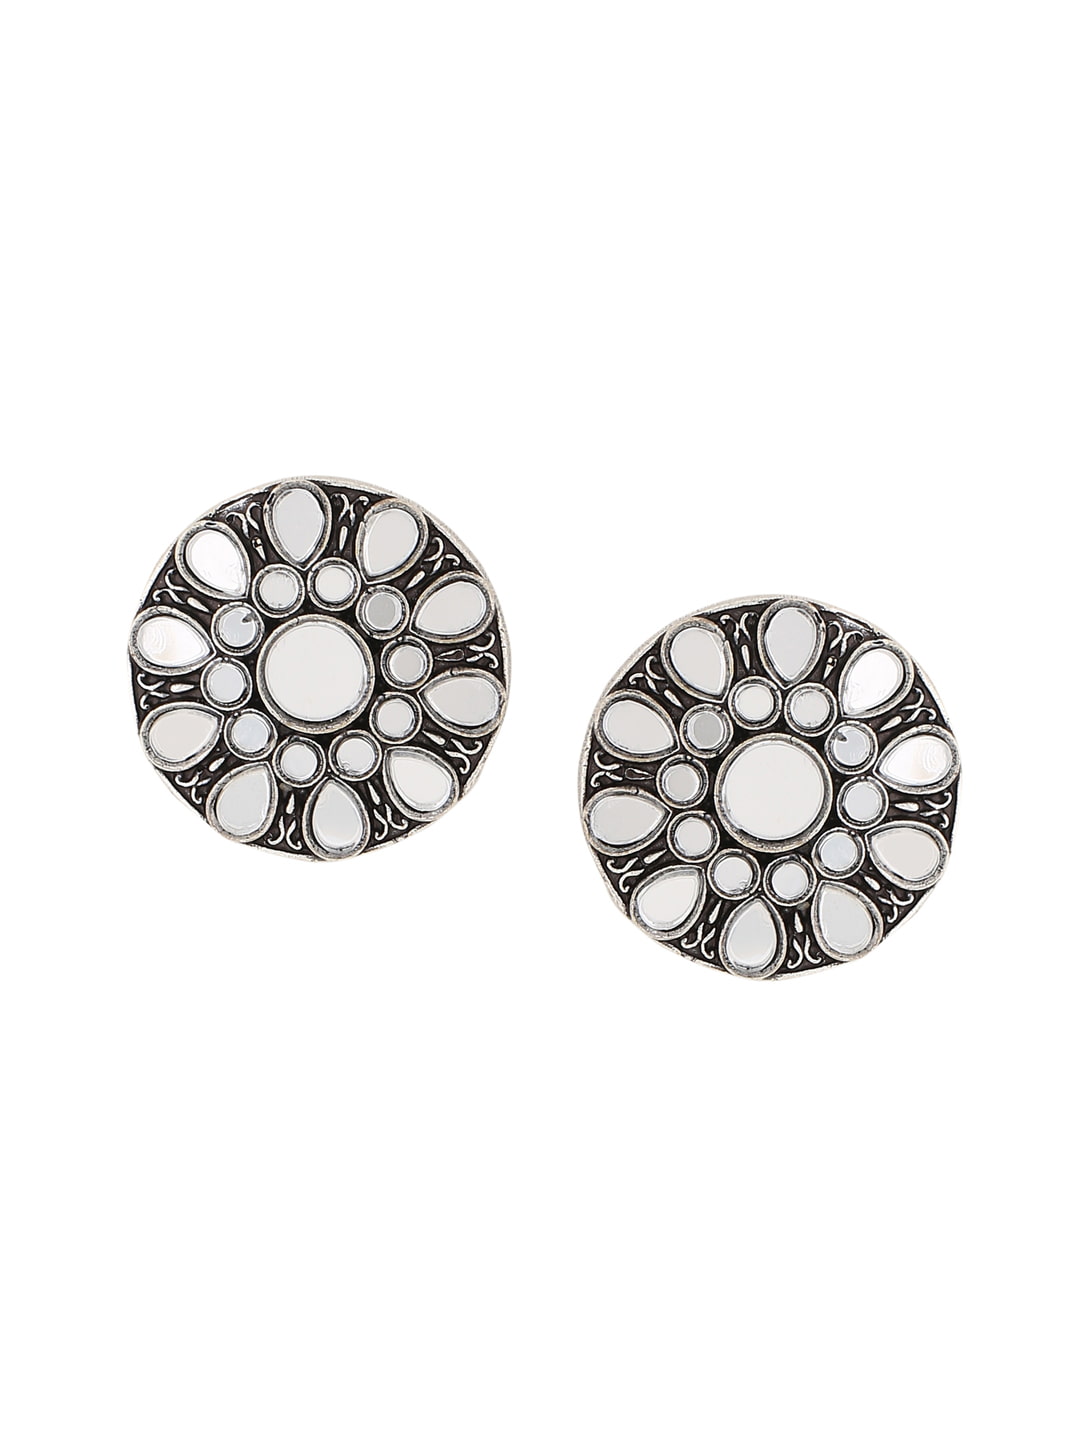 round-shape-oxidised-mirror-stud-earrings-viraasi